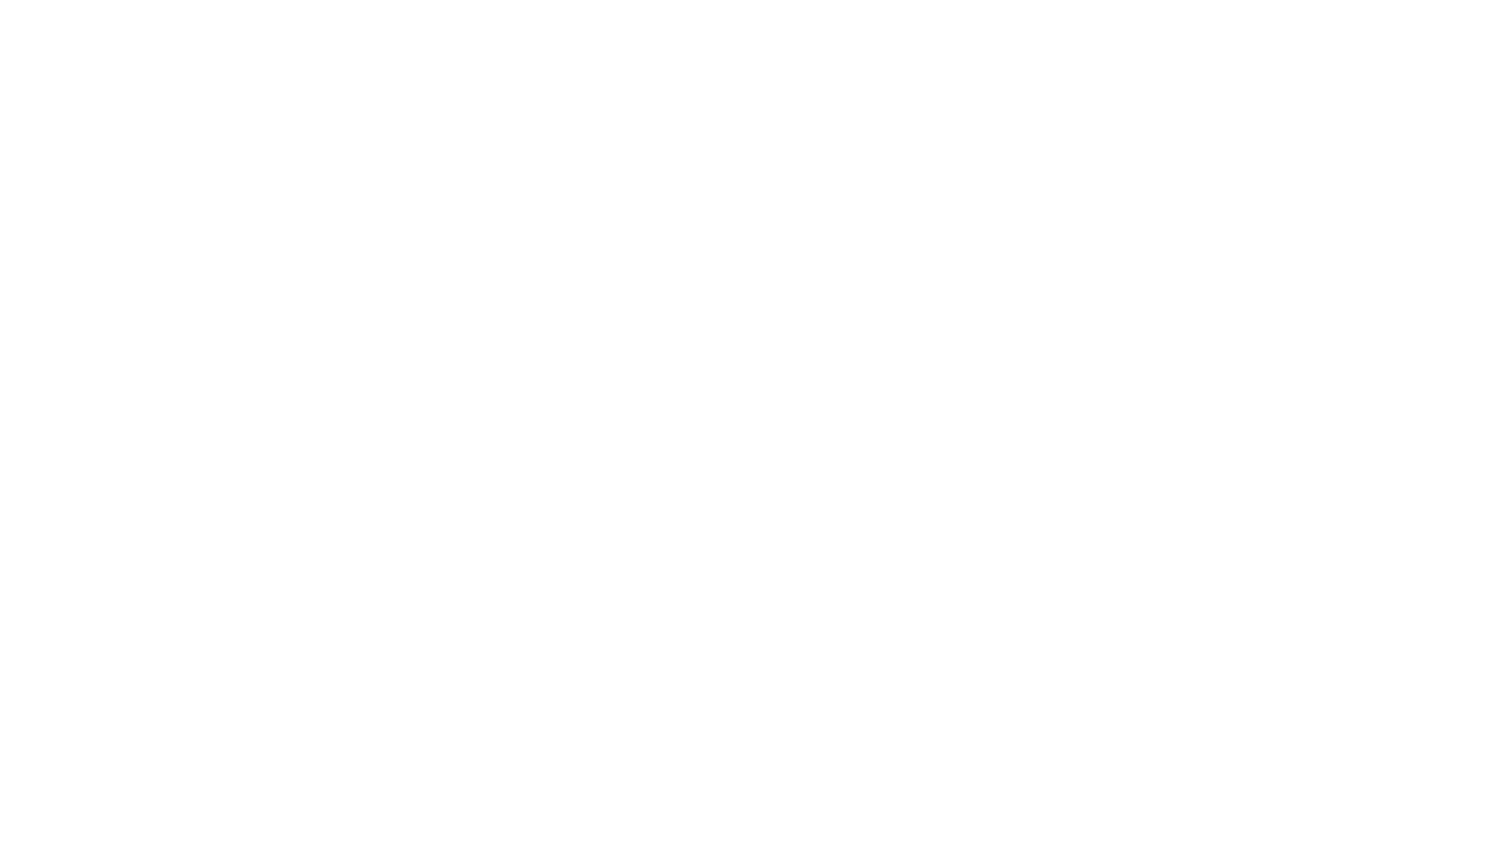 Tulchina Adventures